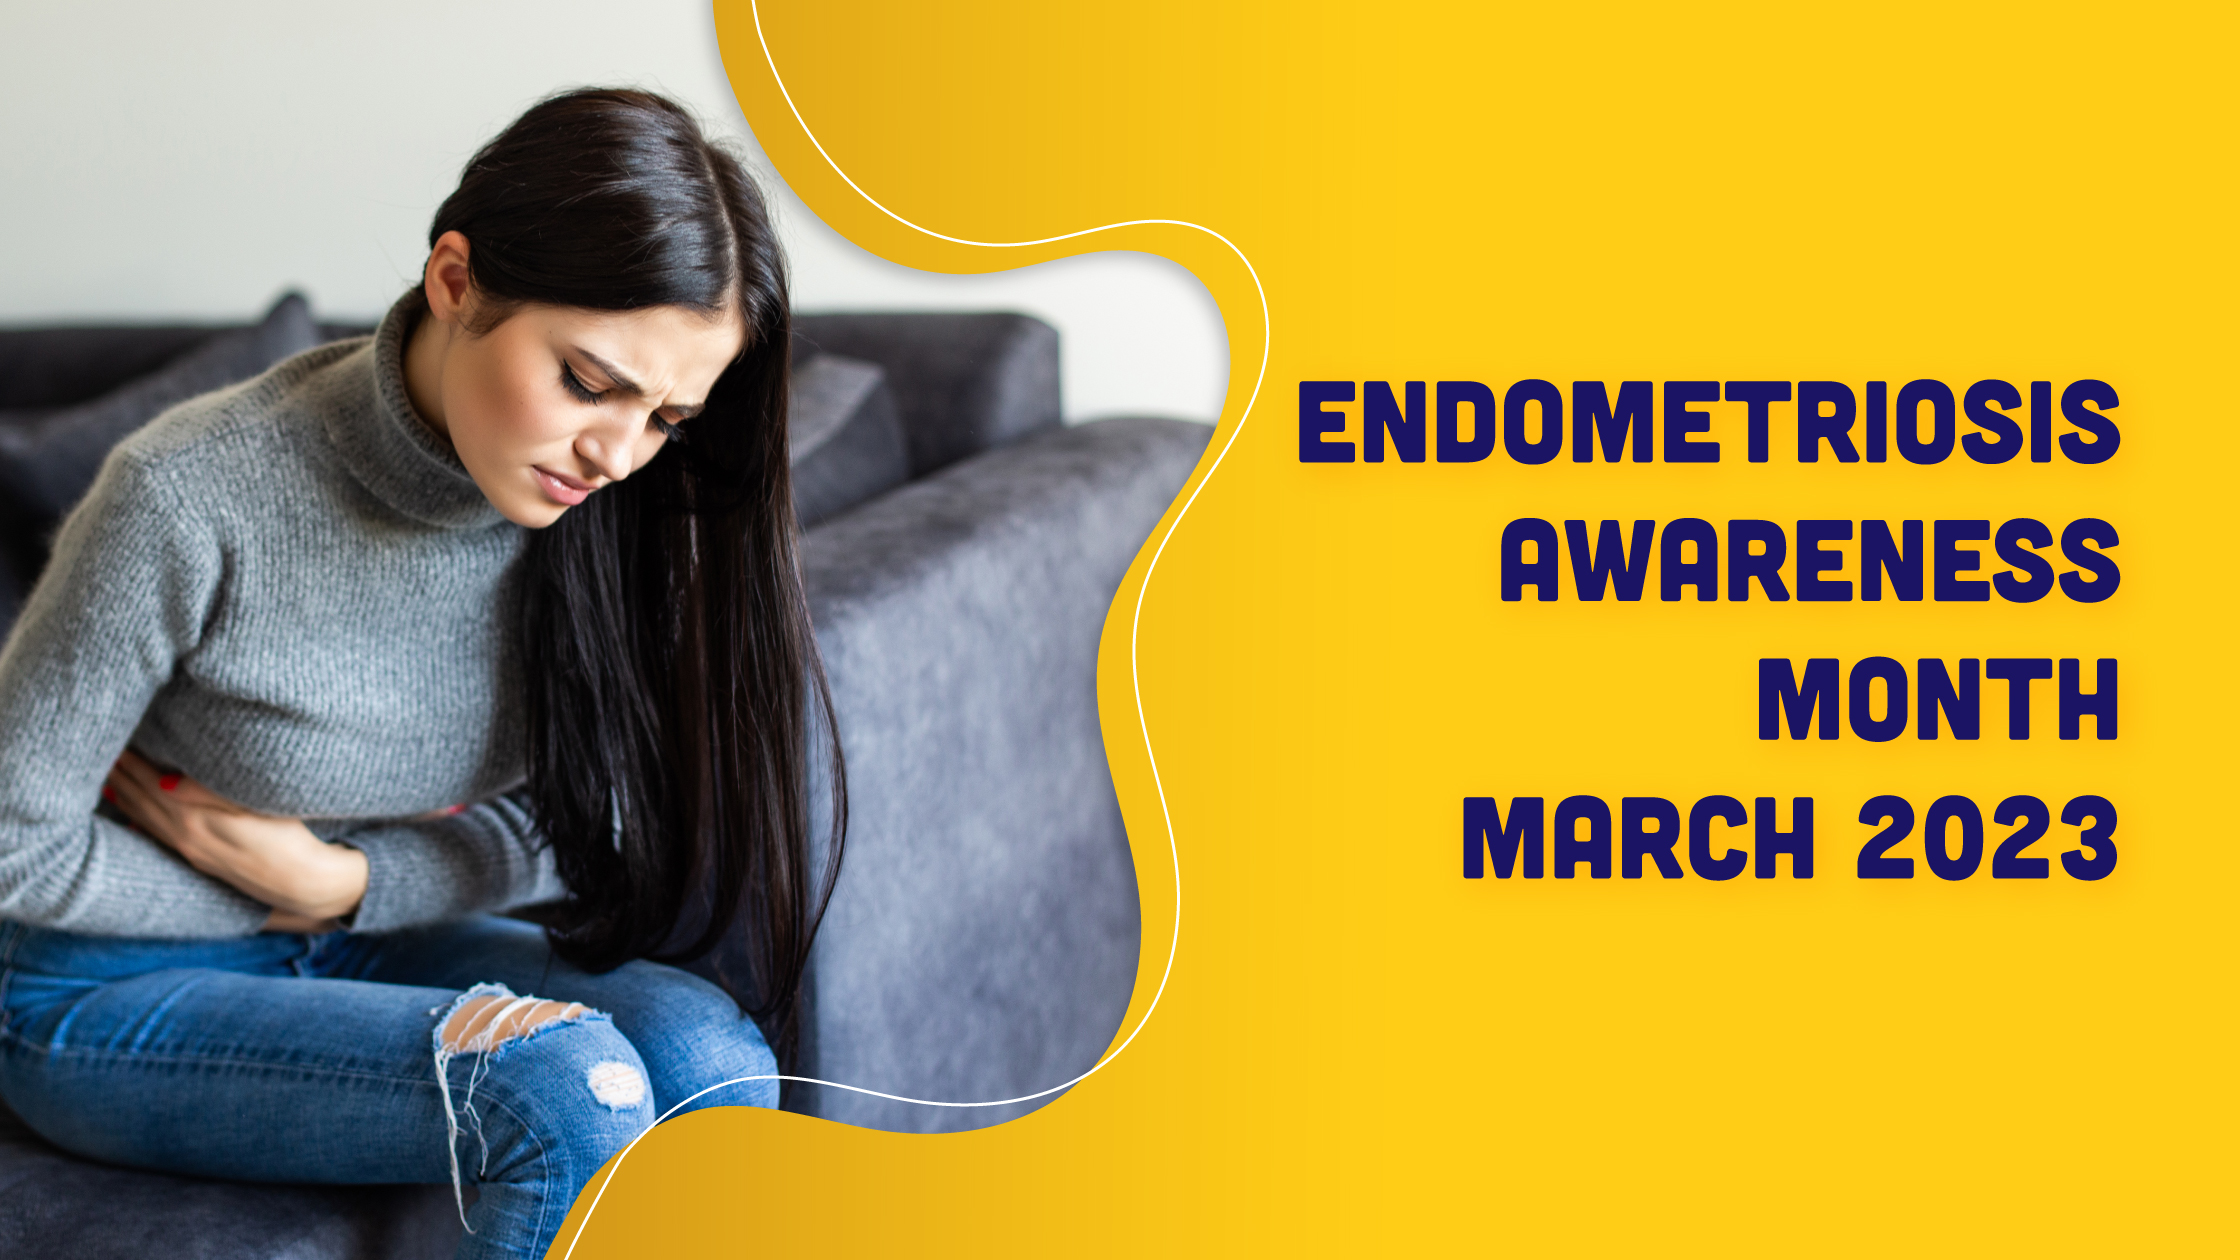 Endometriosis Awareness Month – March 2023